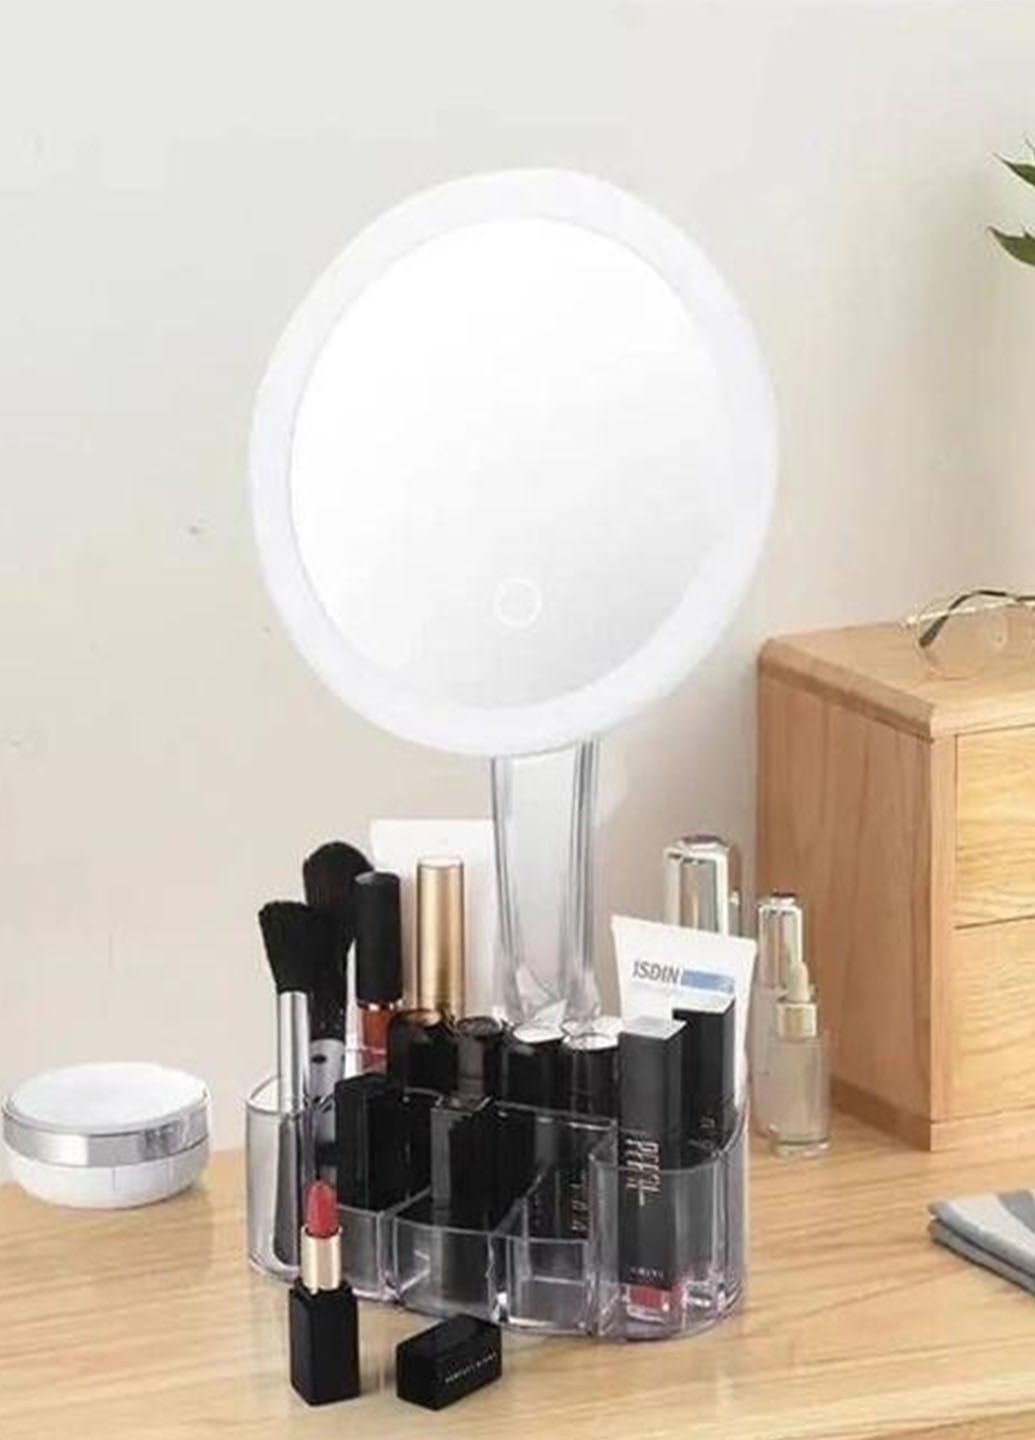 Дзеркало косметичне настільне з LED підсвічуванням Cosmetic Mirror з органайзером для косметики 150 мм Good Idea xh-086 (289352314)